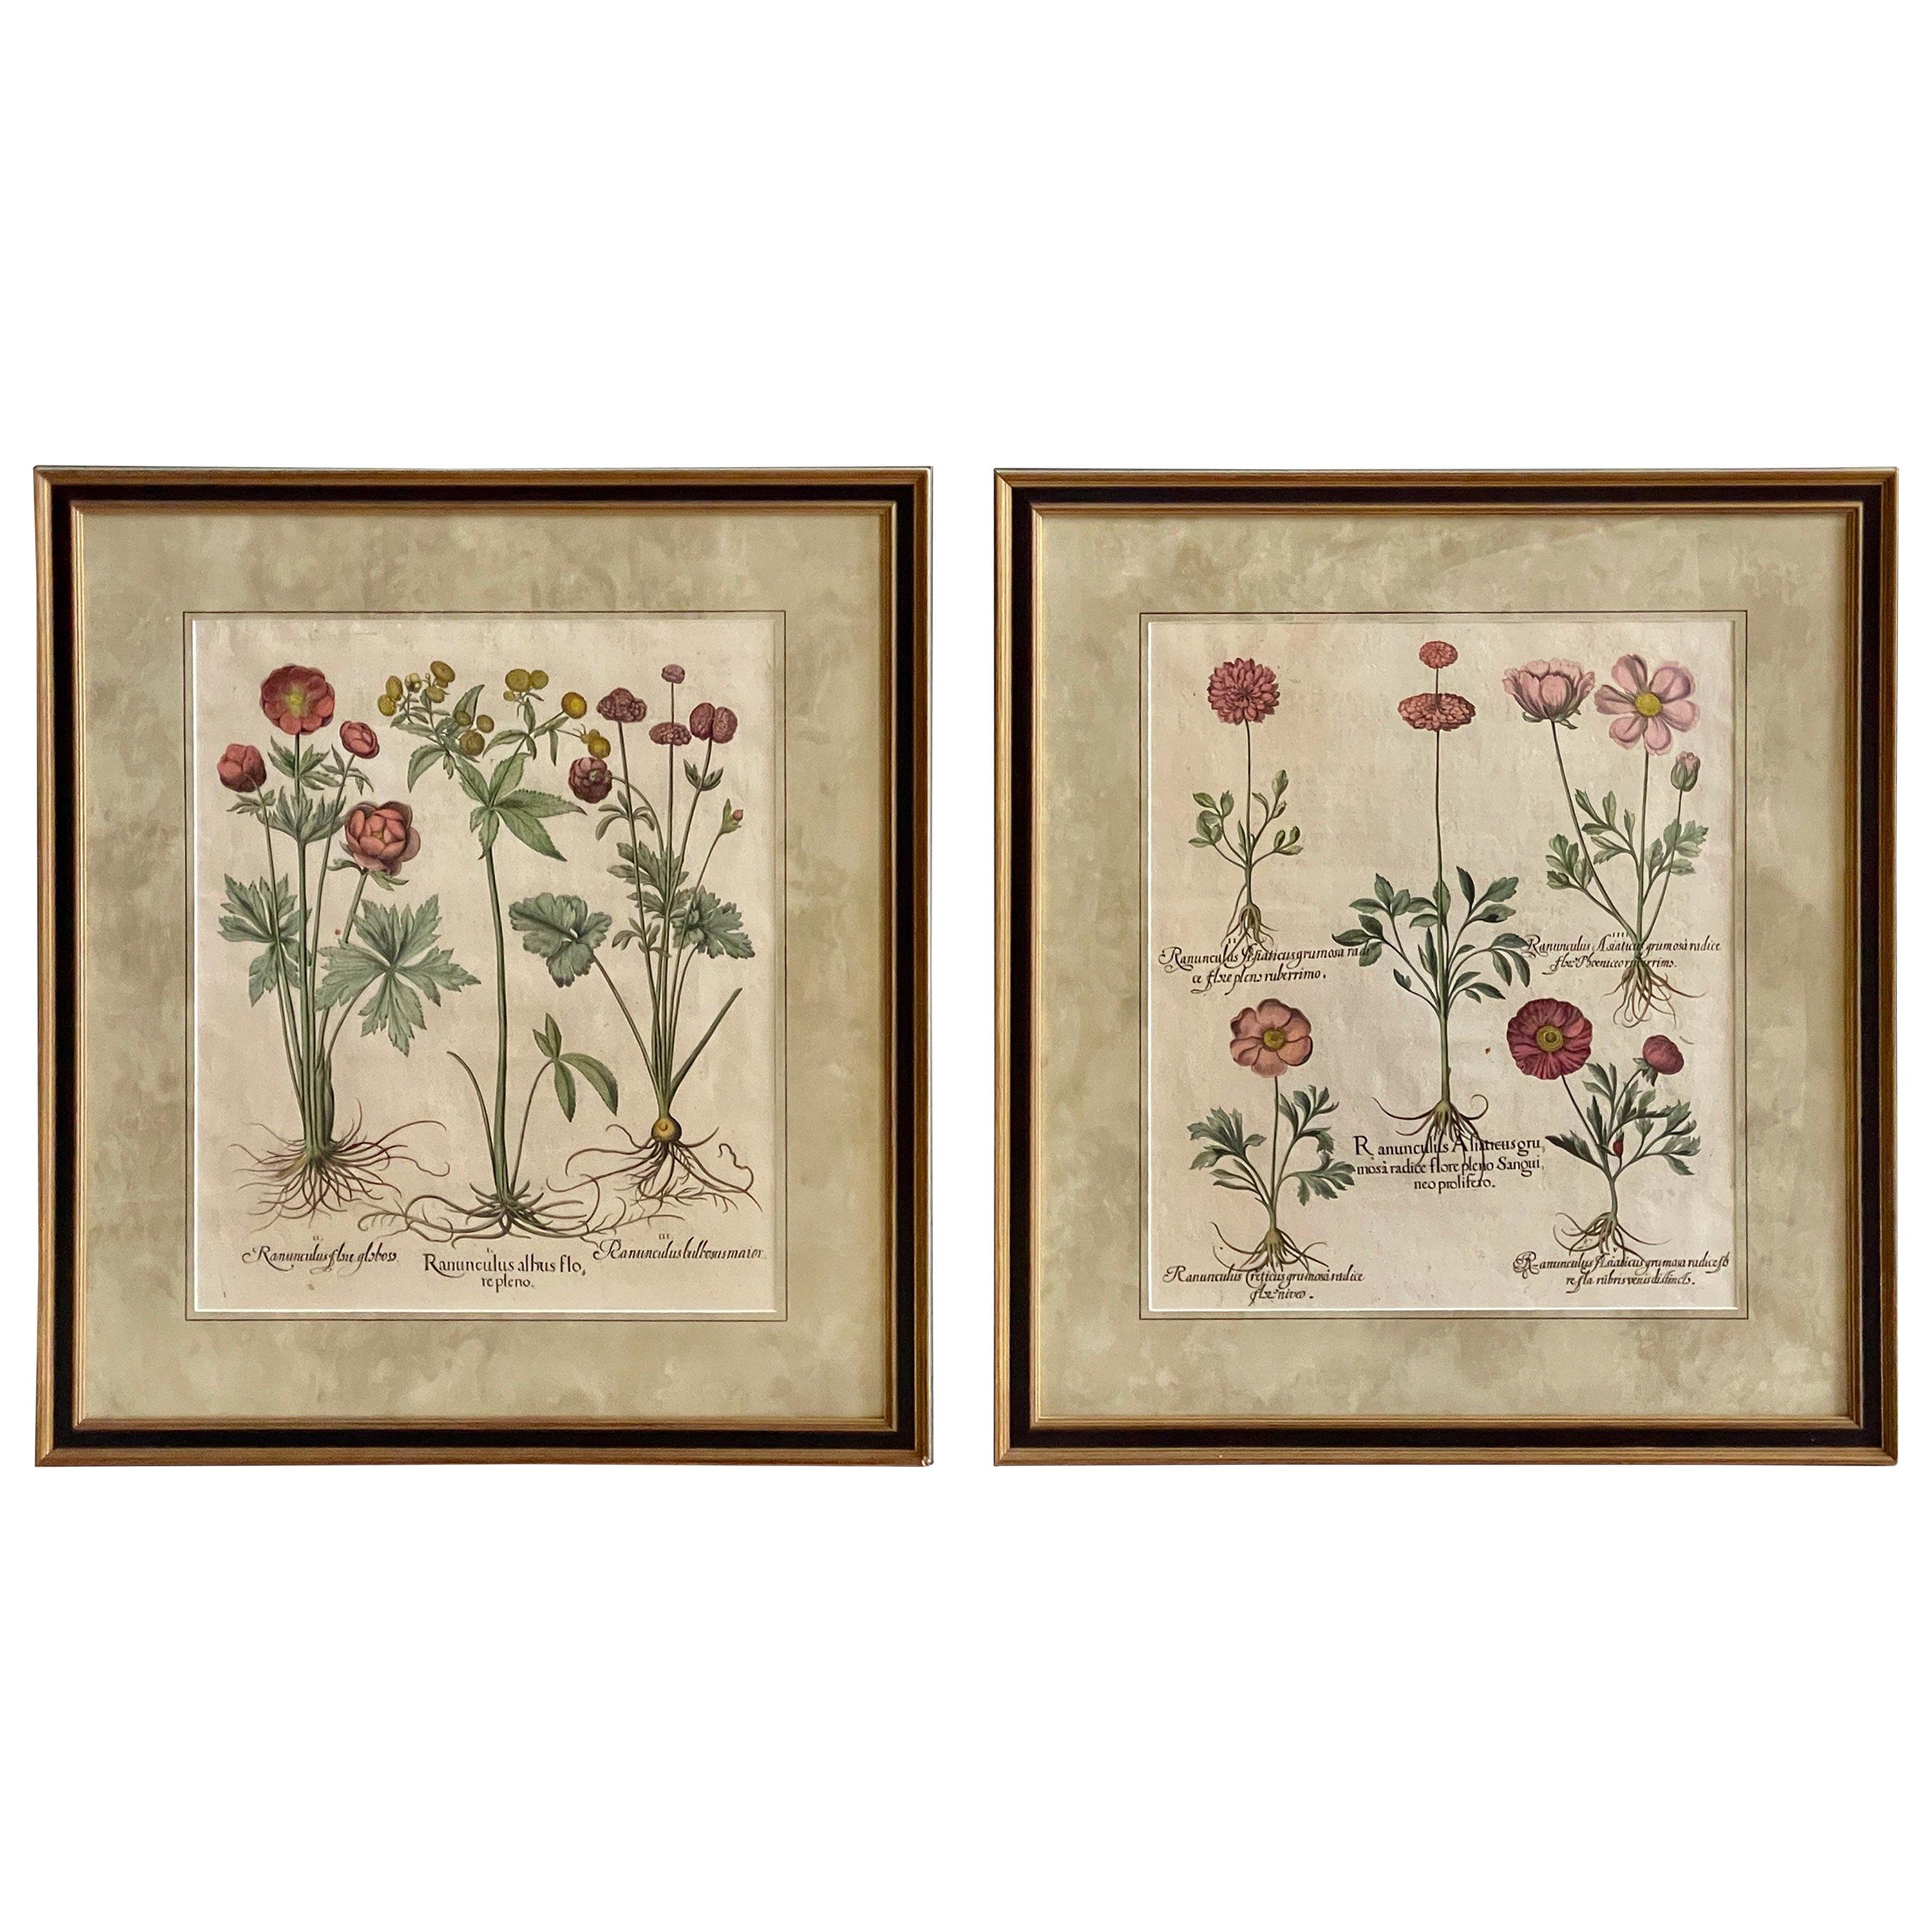 Pair of Framed, Hand Painted Botanical Engravings by Basilius Besler